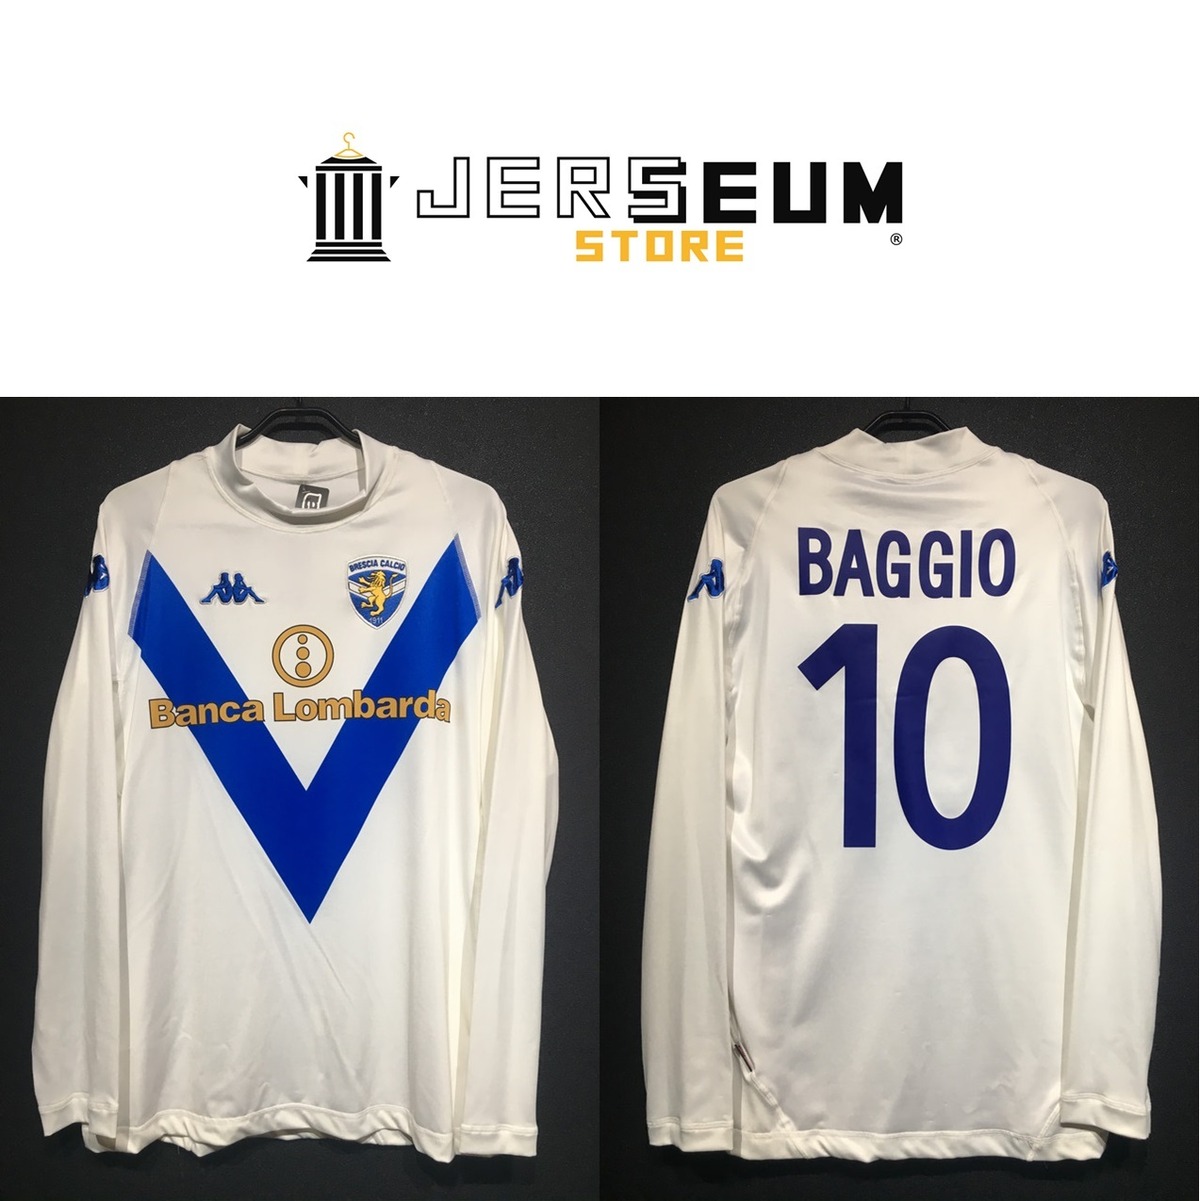 2003/04】 / Brescia Calcio（A） / Condition：Brand New / Grade：8 / Size：XL /  No.10 BAGGIO | Jerseum Store